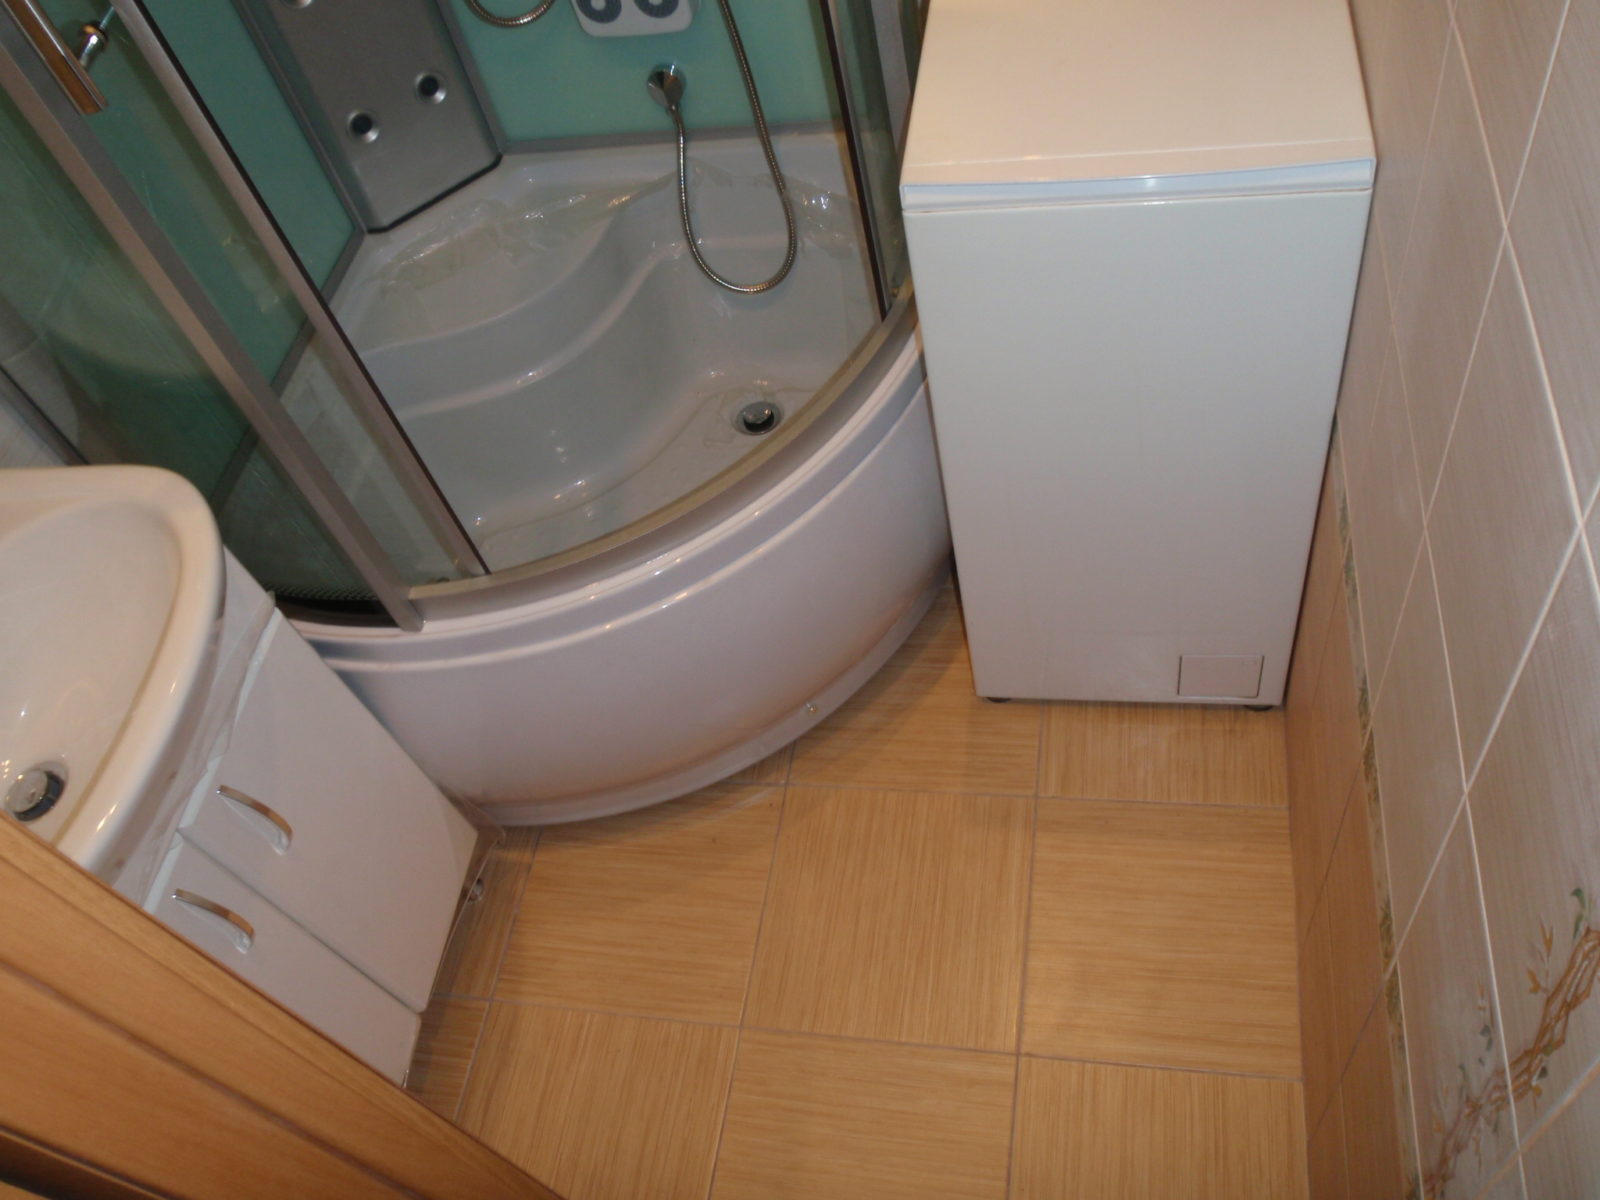 Стиральная машина в ванной - как поставить или спрятать